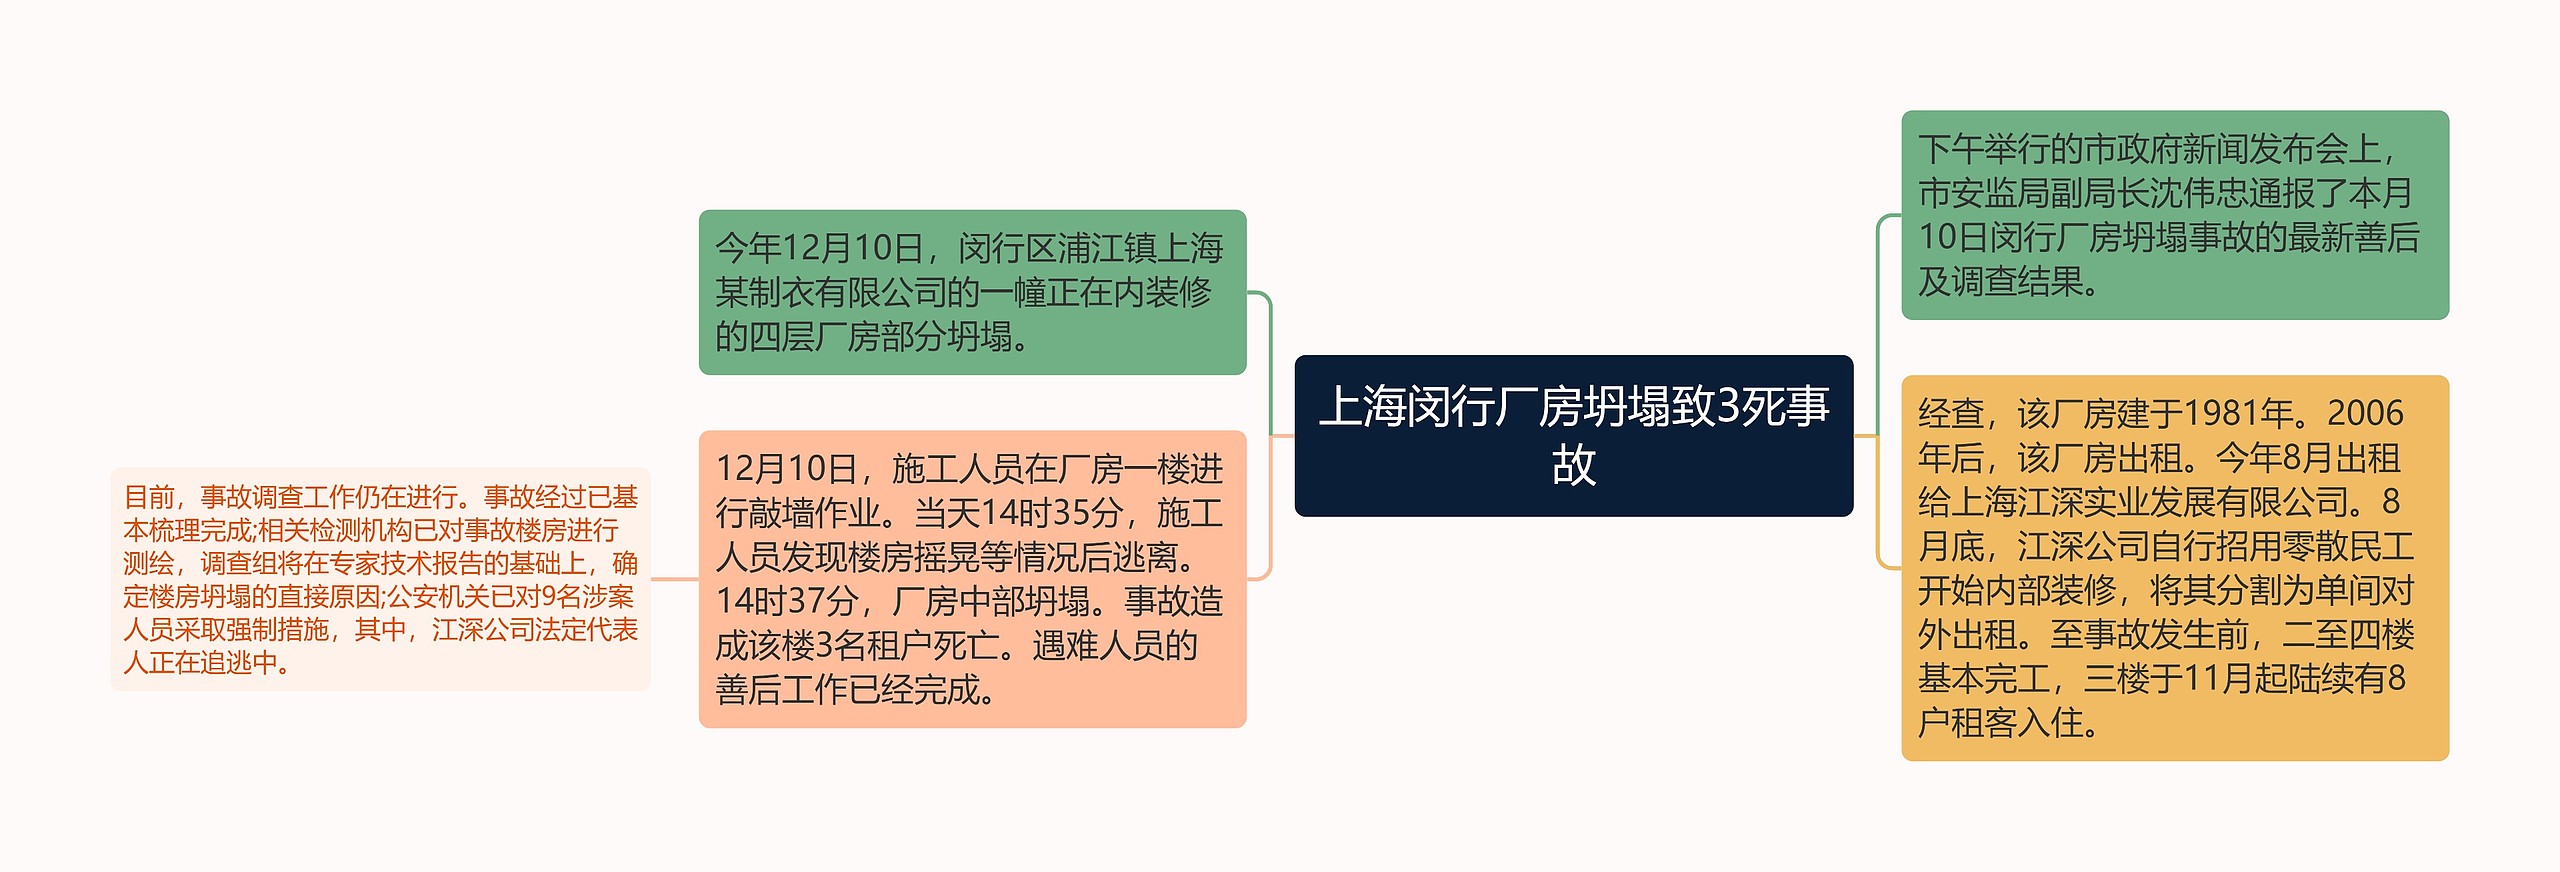 上海闵行厂房坍塌致3死事故思维导图